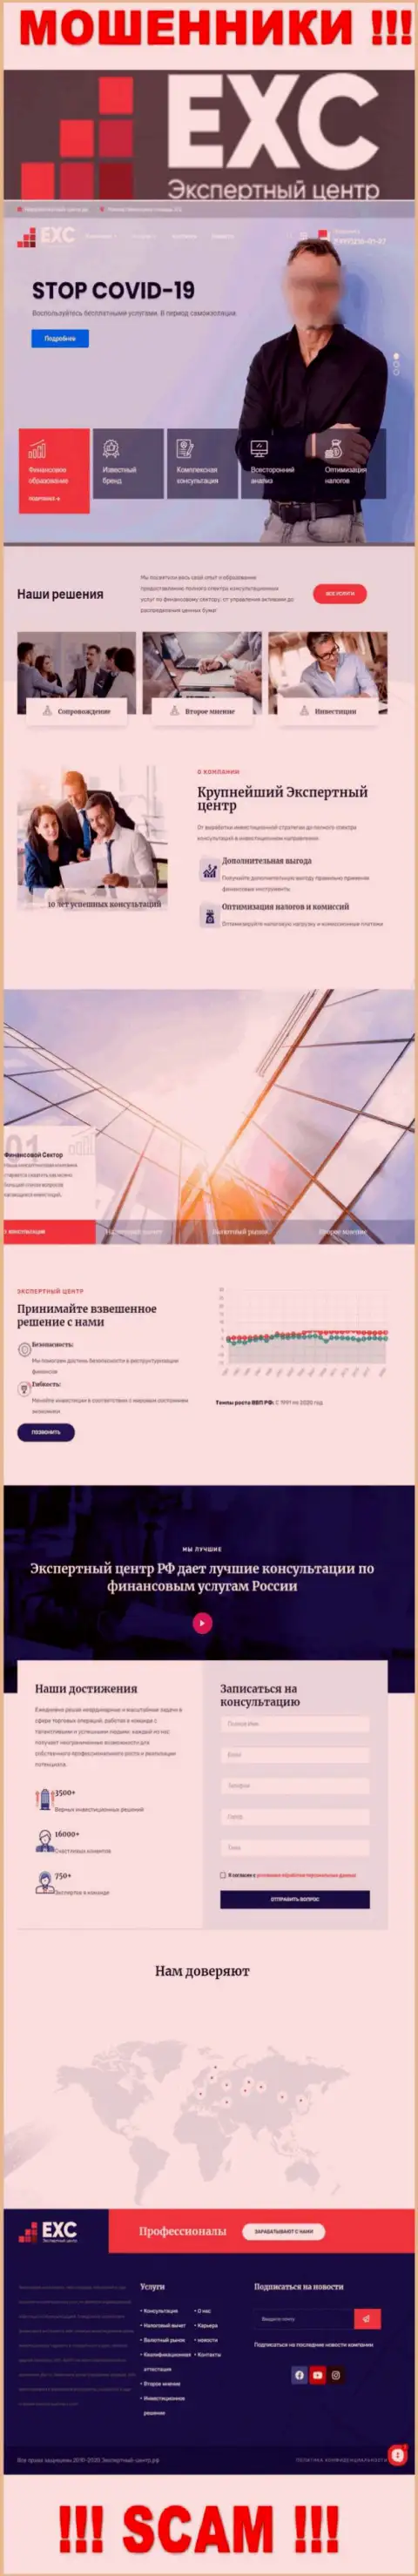 Официальный сайт мошенников Экспертный-Центр РФ